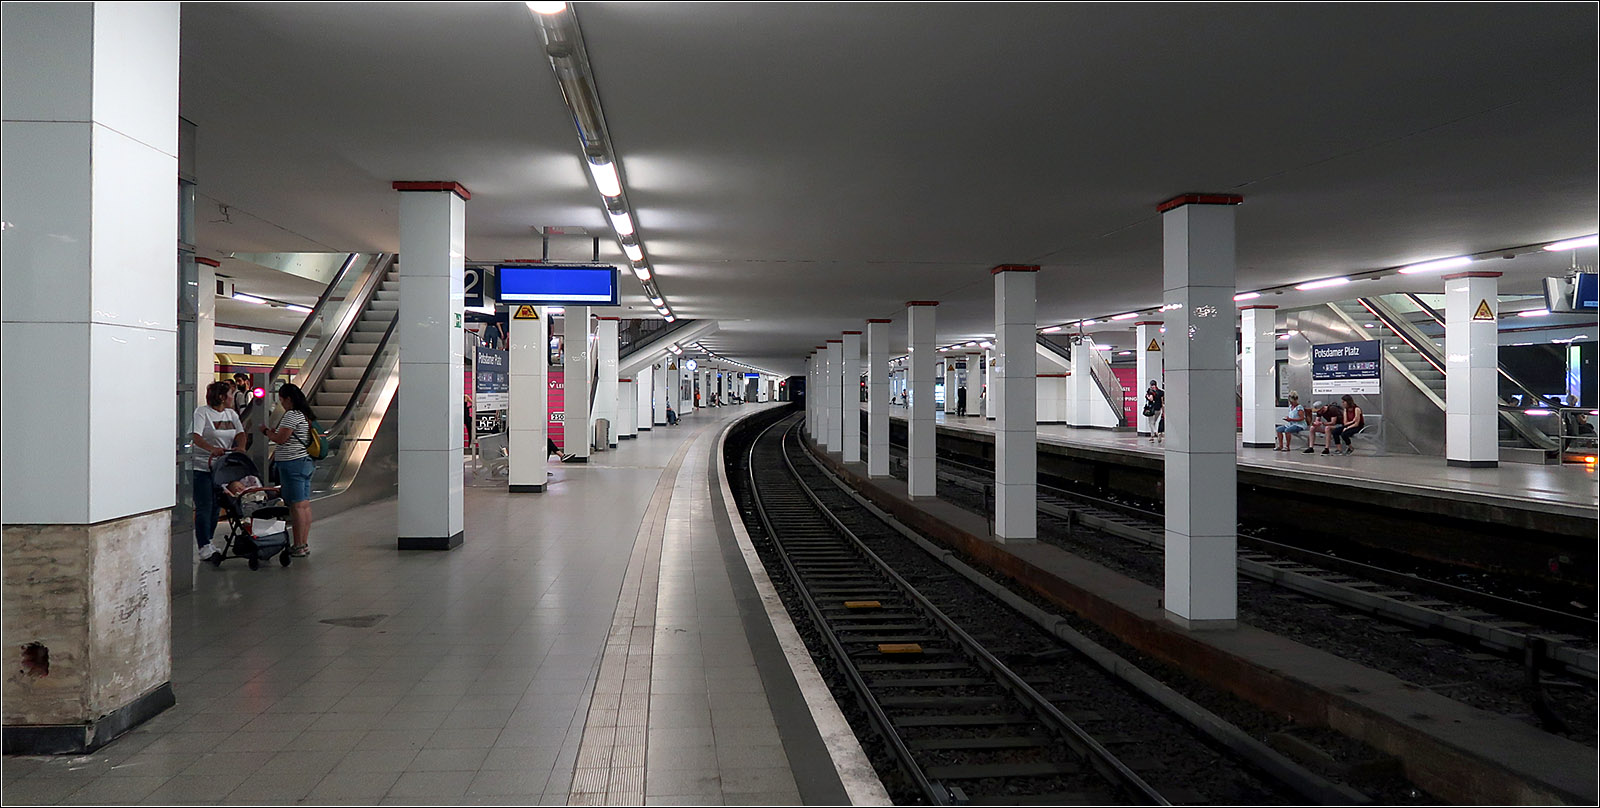 Für eine zweite Nord-Süd-S-Bahn vorbereitet - 

... ist der S-Bahnhof Potsdamer Platz schon seit seiner Fertigstellung im Jahr 1939. Die beiden mittleren Gleise wird dann die zweite Nordsüd-Strecke aufnehmen. Bis kurz vor das Brandenburger Tor ist der Tunnel schon viergleisig. Ab dort soll es in zwei Röhren rechts und links am Reichstag vorbei zu einer unterirdischen Station am Hauptbahnhof gehen. Weiter nördlich taucht die Strecke auf und wird mittels einem kreuzungsfreien Gleisdreiecks an die Ringe S-Bahn angebunden, einmal zum Bahnhof Westhafen und auf der anderen Seite zur Station Wedding. 
Nach Süden sollen sich die Gleise aus dem Bahnhof Potsdamer Platz wieder ausfädeln (Abzweig vorbereitet) und dann neben der U2 wieder ans Tageslicht kommen. Platz für den Tunnel wurde unter bzw in der dortigen Bebauung freigehalten. Am Gleisdreieck soll ein Hochbahnhof für die S-Bahn entstehen zum Umstieg auf die dort verkehrenden U-Bahnlinien. Südlich kann sich dann die Strecke in Richtung der beiden Yorkstraße-S-Bahnstationen verzweigen und dort Anschluss an die vorhanden Strecken bieten. Zusätzlich wird eine Verbindung vom Julius-Leber-Platz zur Ring-S-Bahn am Bahnhof Südkreuz geschaffen. 
Würde man hier auch ein Verbindung nach Westen auf die Ringbahn schaffen könnte man eine Achter-S-Bahnlinie einrichten, eine Linie die zweimal über diese zweite Nordsüdstrecke fahren würde.

Das Projekt nennt sich S21, der Bau startet 2009 am Hauptbahnhof, nachdem schon früher die Abzweige am Nordring vorbereitet wurden. In absehbarer Zeit wird nur der Abschnitt vom Nordring zu einem prov. Bahnhof am Hauptbahnhof in Betrieb gehen. Bis die gesamte Strecke mal in Betrieb sein wird, werden wahrscheinlich mehr Jahre vergangen sein, als der Bau von Stuttgart 21 gebraucht haben wird. Mal sehen ob die Berliner S21 oder die zweite Stammstrecke von München zuerst fertig wird.

15.07.2023 (M) 